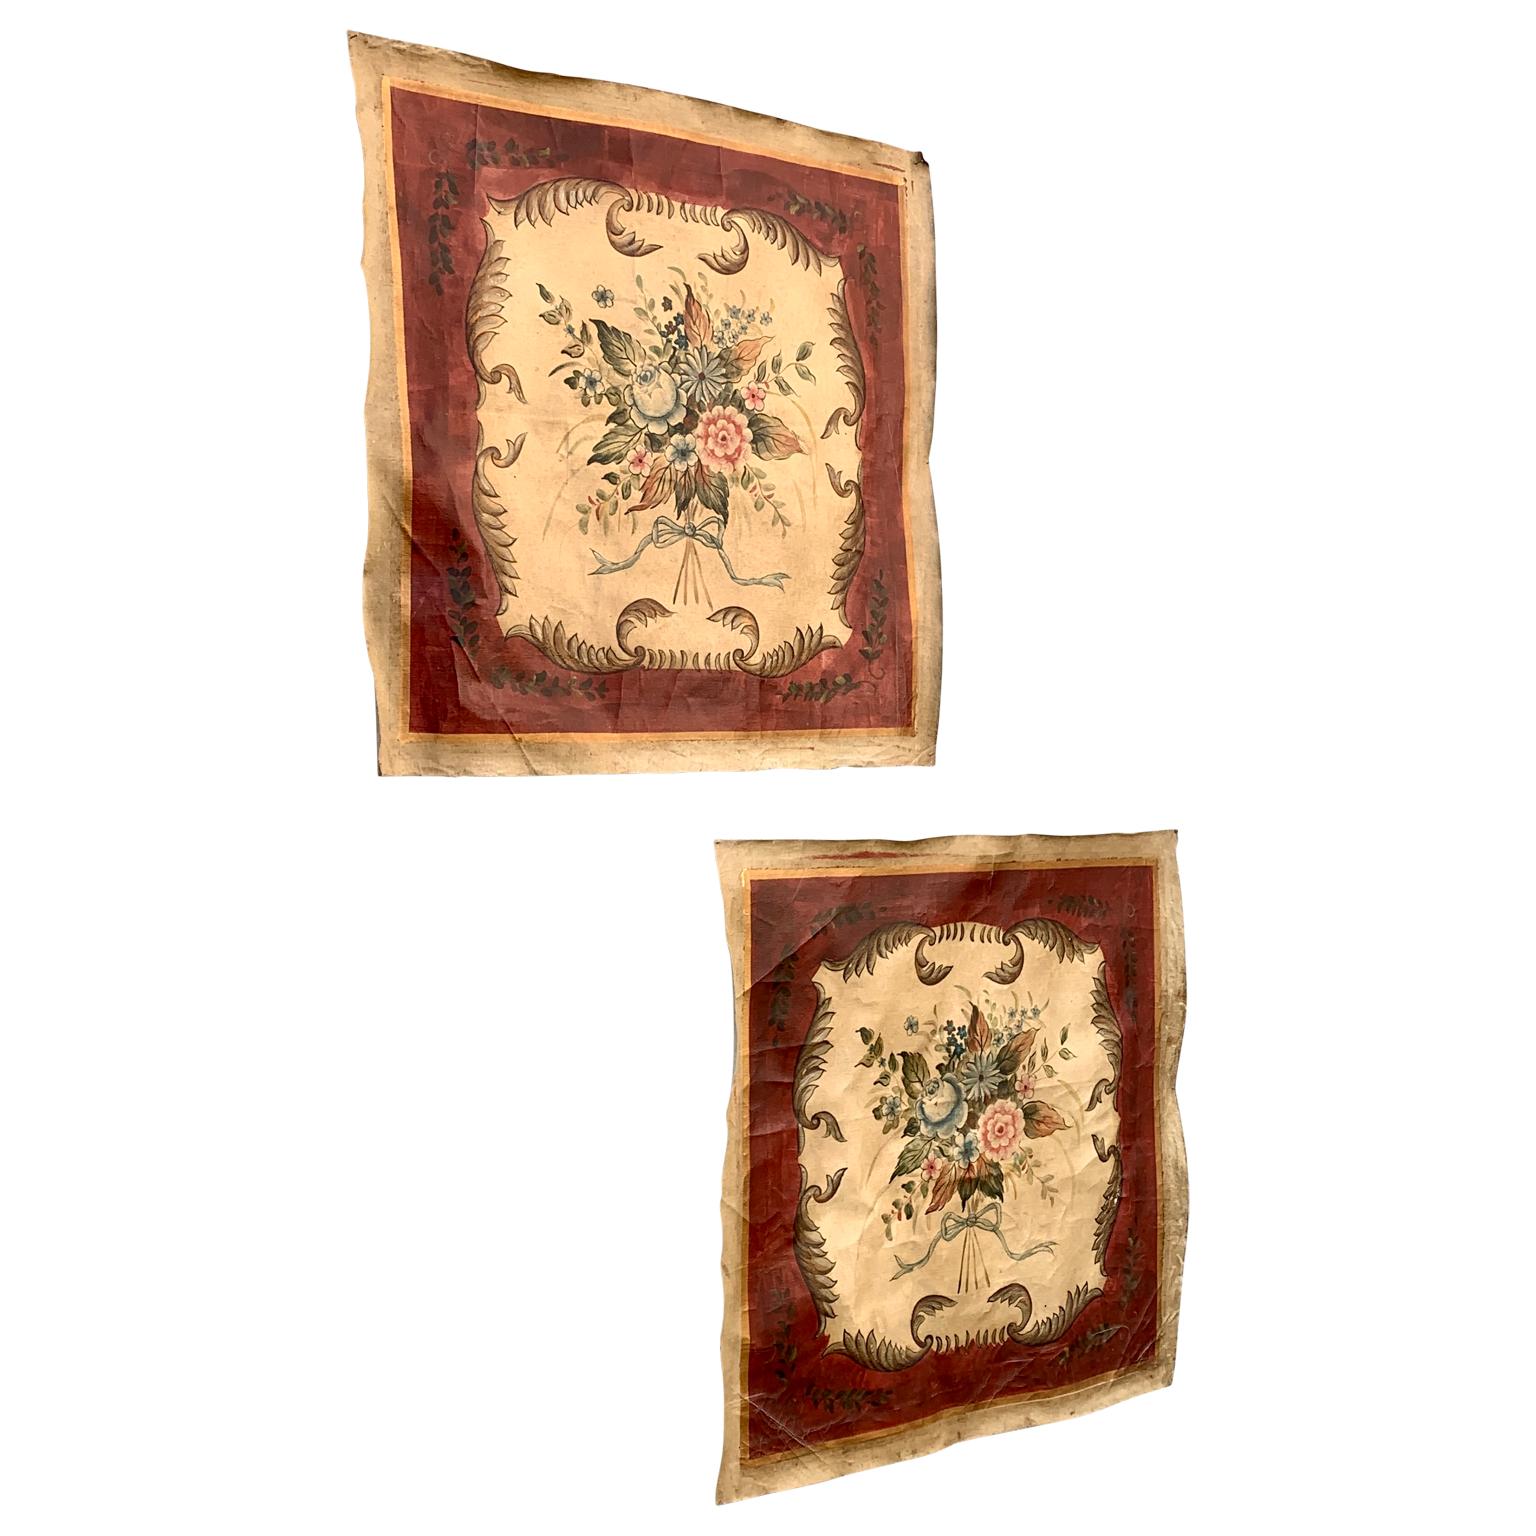 Satz von zwei antiken Ölgemälden auf Leinwand, die Blumendekoration im Louis XVI-Stil darstellen. Dieses quadratische Gemäldepaar stammt aus der Zeit um 1900 (1880-1920). Diese Gemälde waren ursprünglich als Wandtafeln in einem alten Schloss in